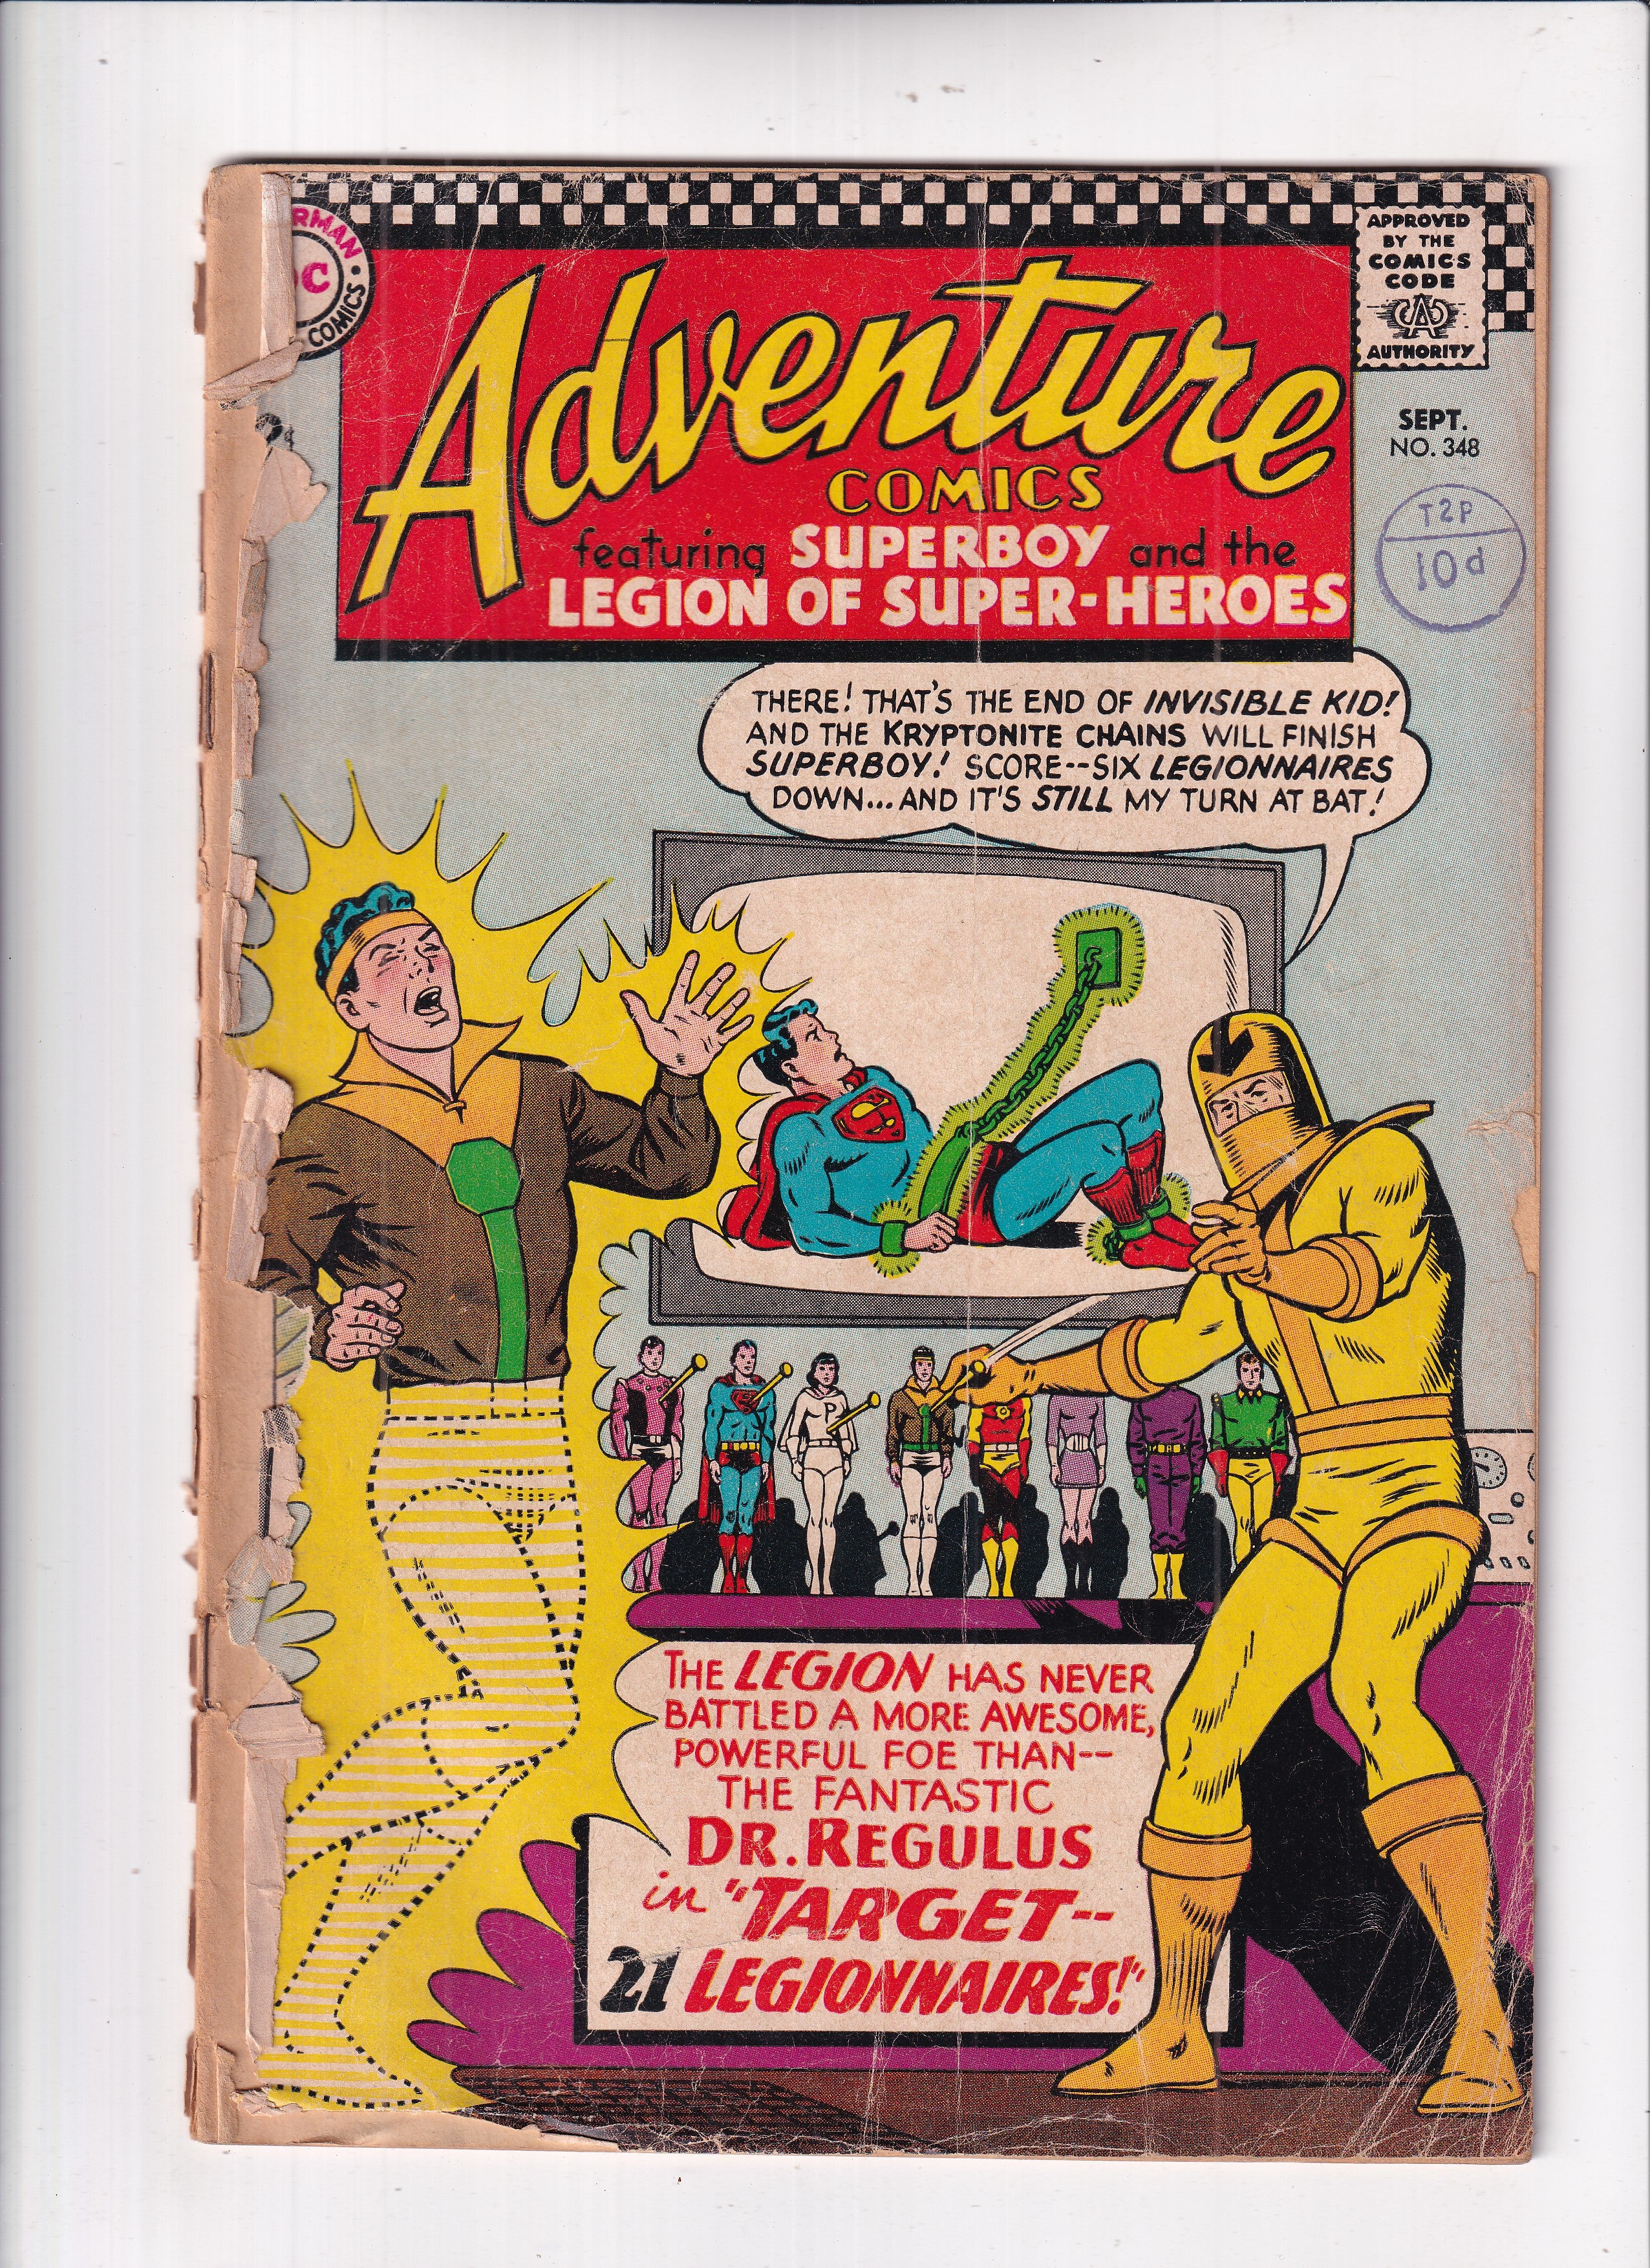 Adventure Comics #348 (Detached cover)